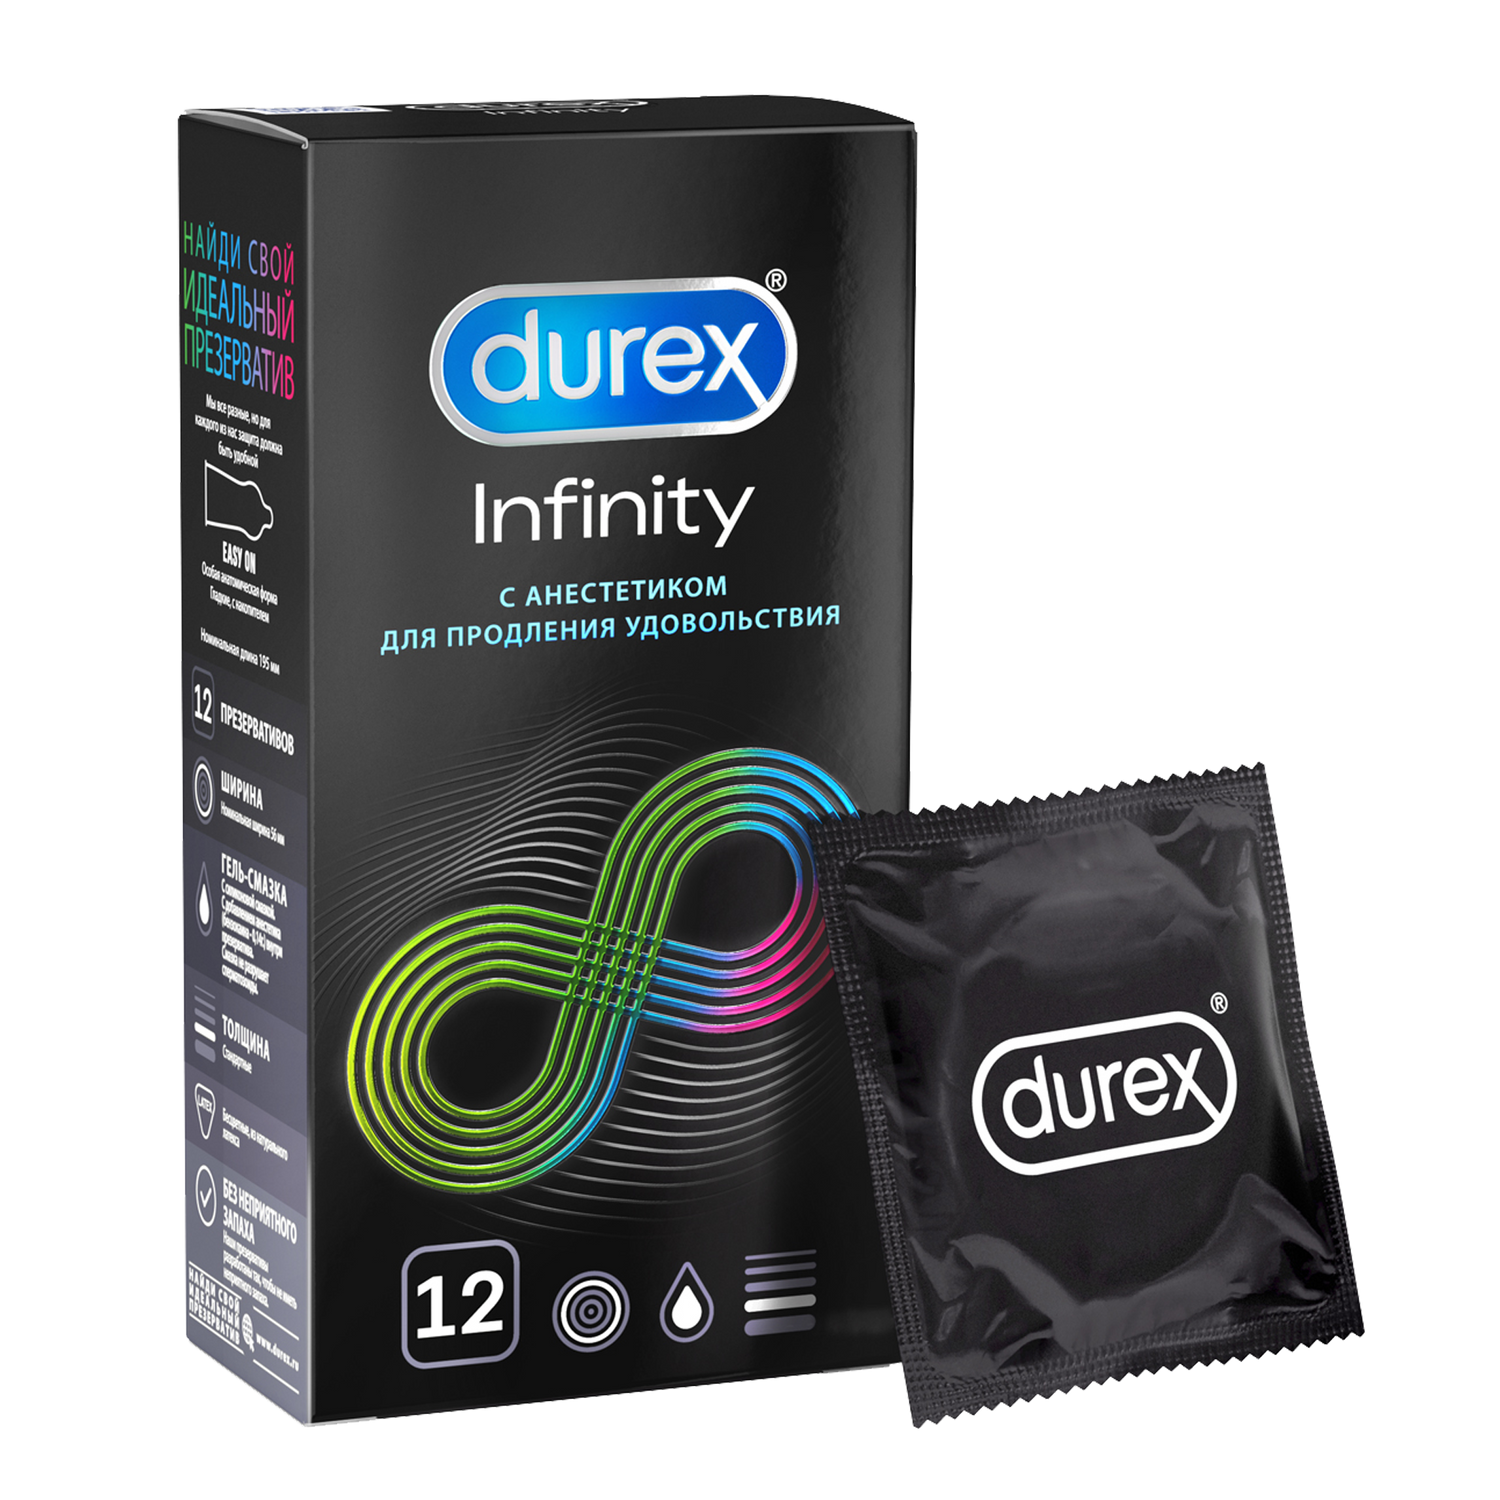 Презервативы Durex Infinity гладкие с анестетиком, 12 шт. durex elite презервативы гладкие сверхтонкие 18 18 шт